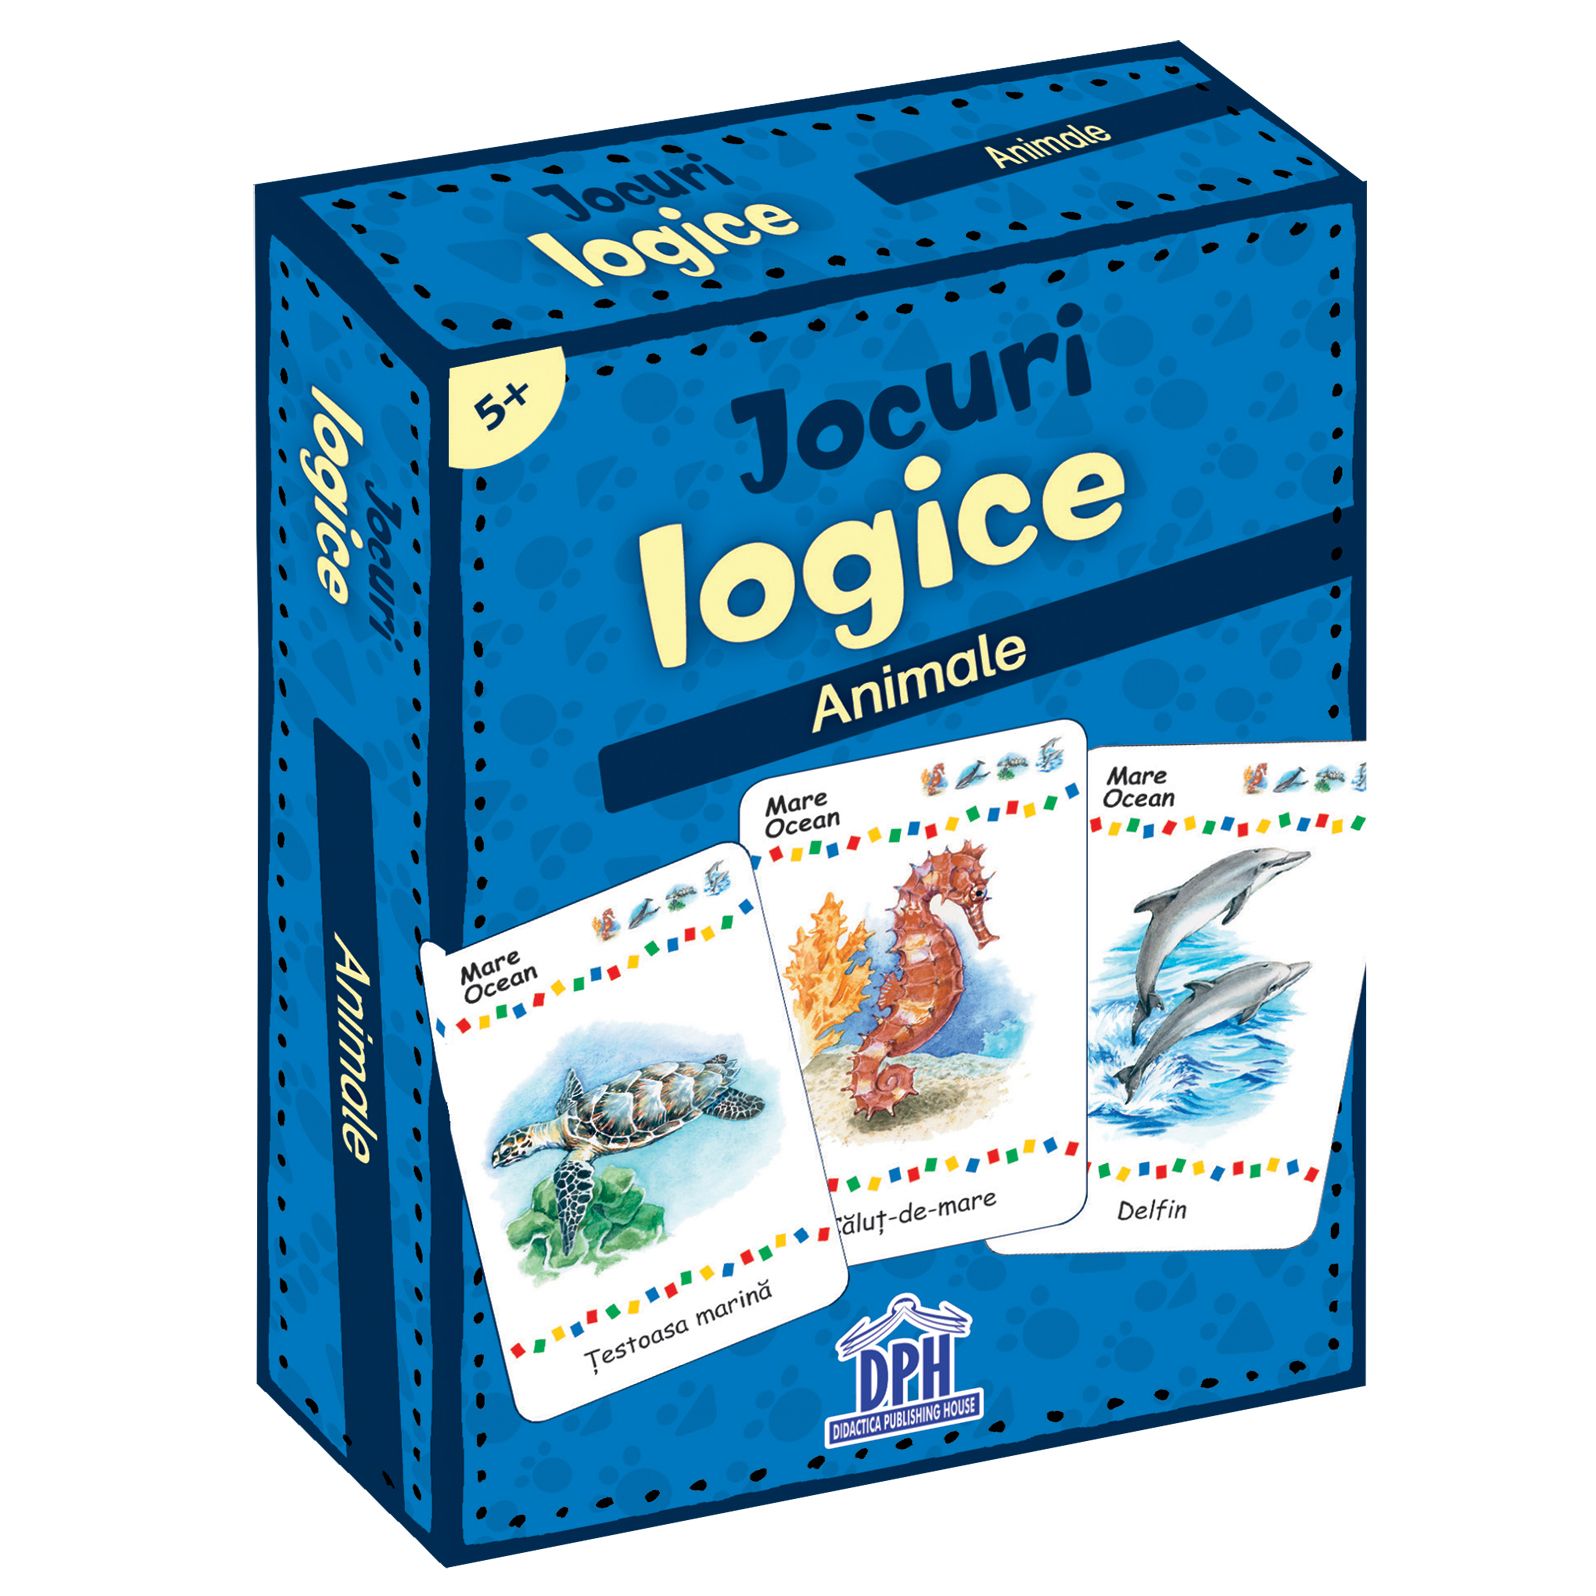 Jocuri logice – Animale | carturesti.ro imagine 2022